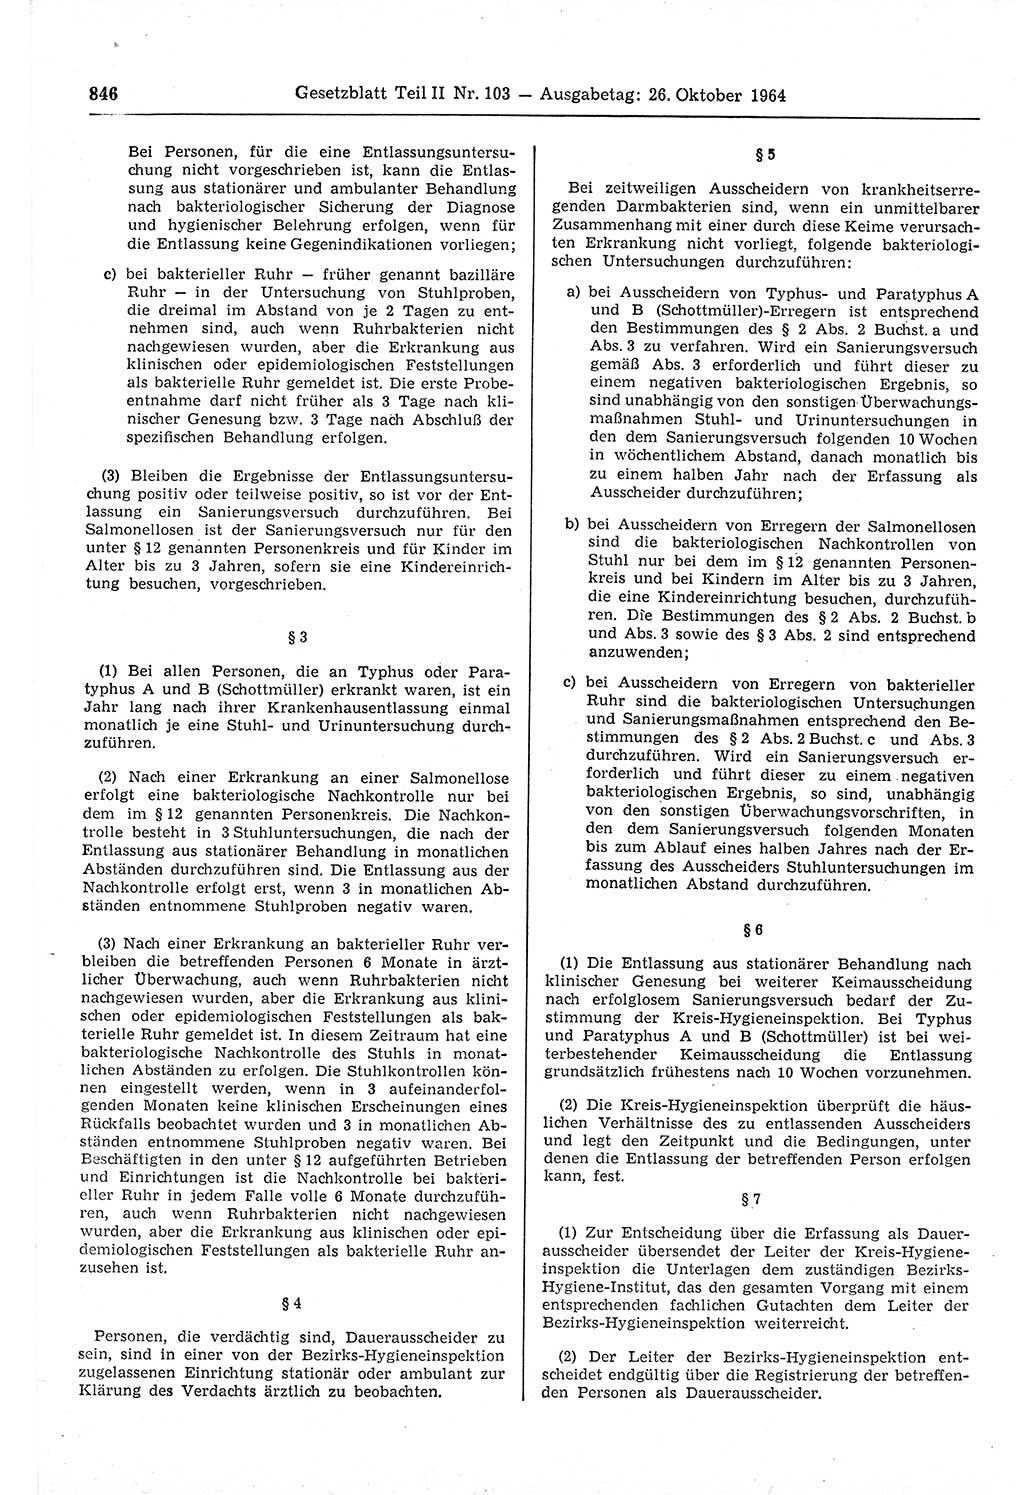 Gesetzblatt (GBl.) der Deutschen Demokratischen Republik (DDR) Teil ⅠⅠ 1964, Seite 846 (GBl. DDR ⅠⅠ 1964, S. 846)